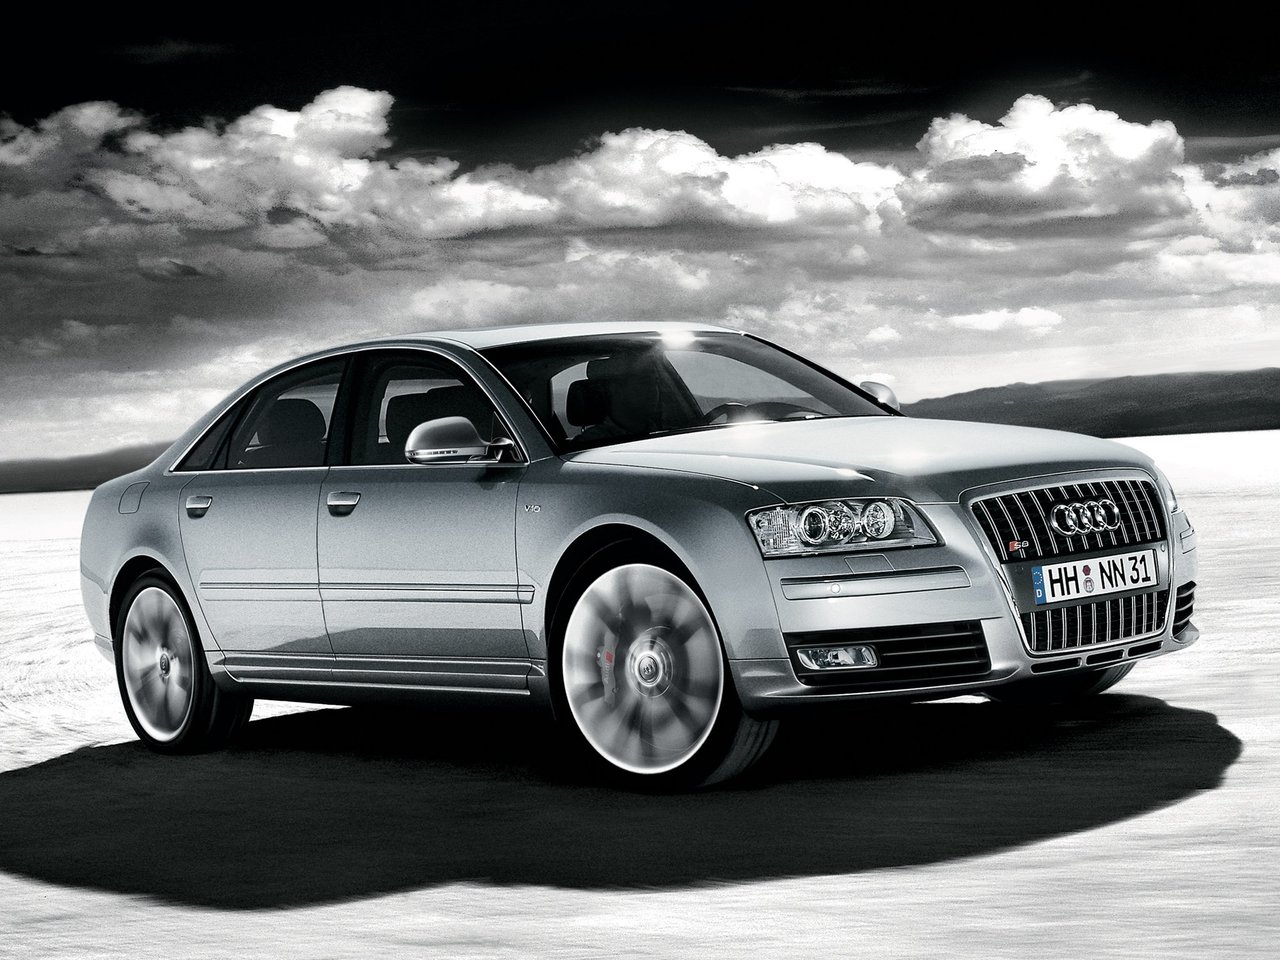 Снижаем расход Audi S8 на топливо, устанавливаем ГБО